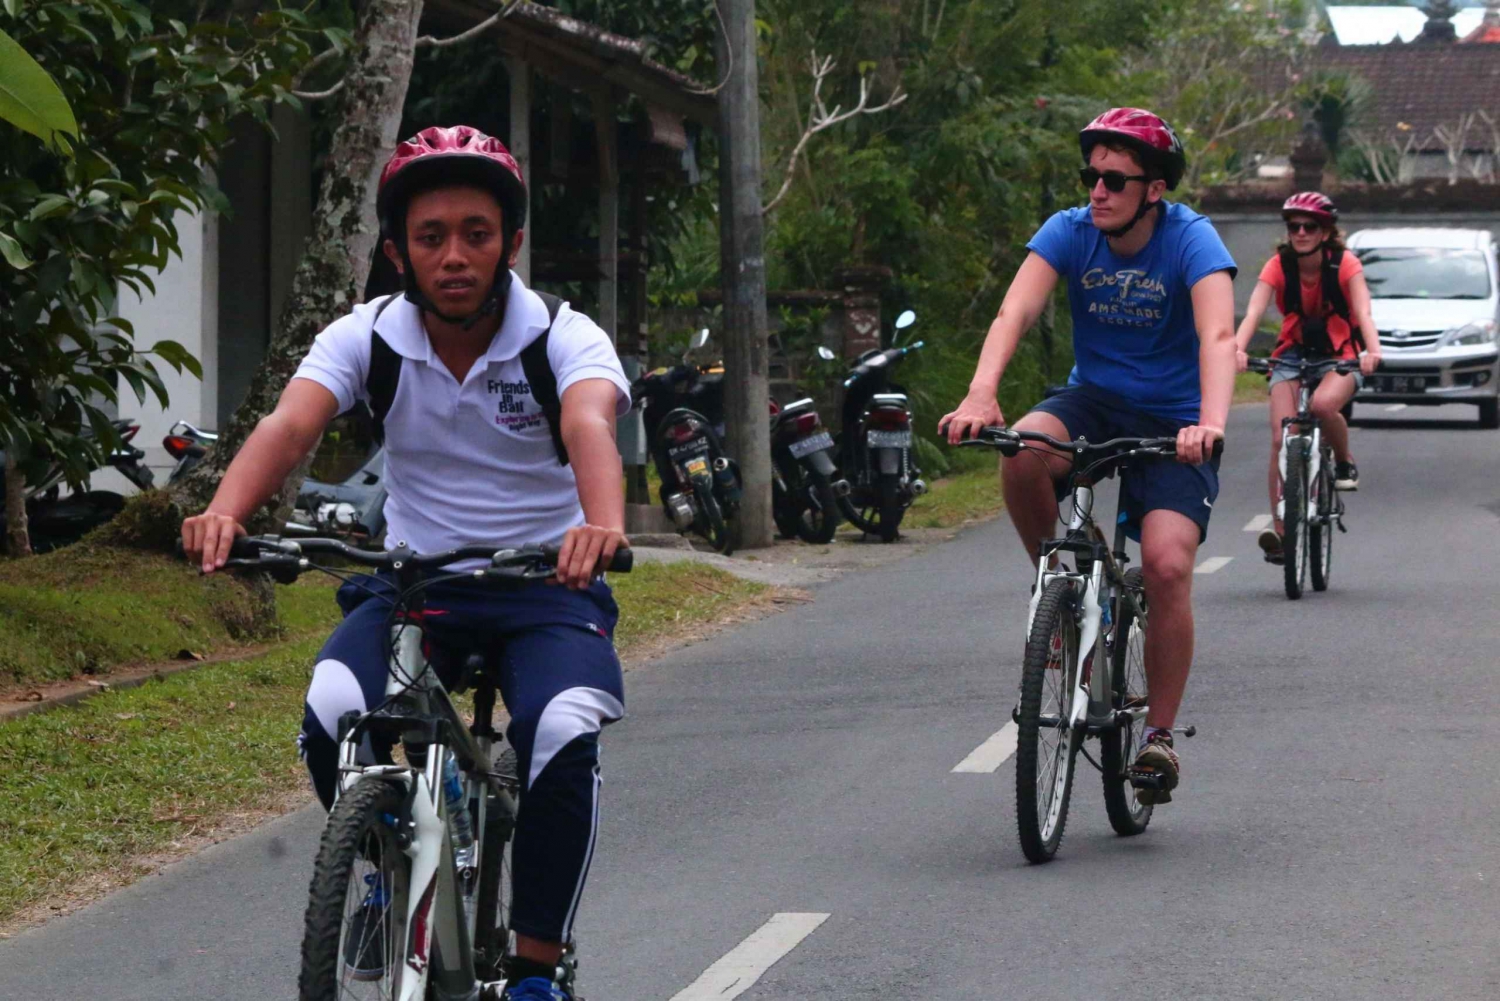 Descenso cultural en bicicleta por Bali